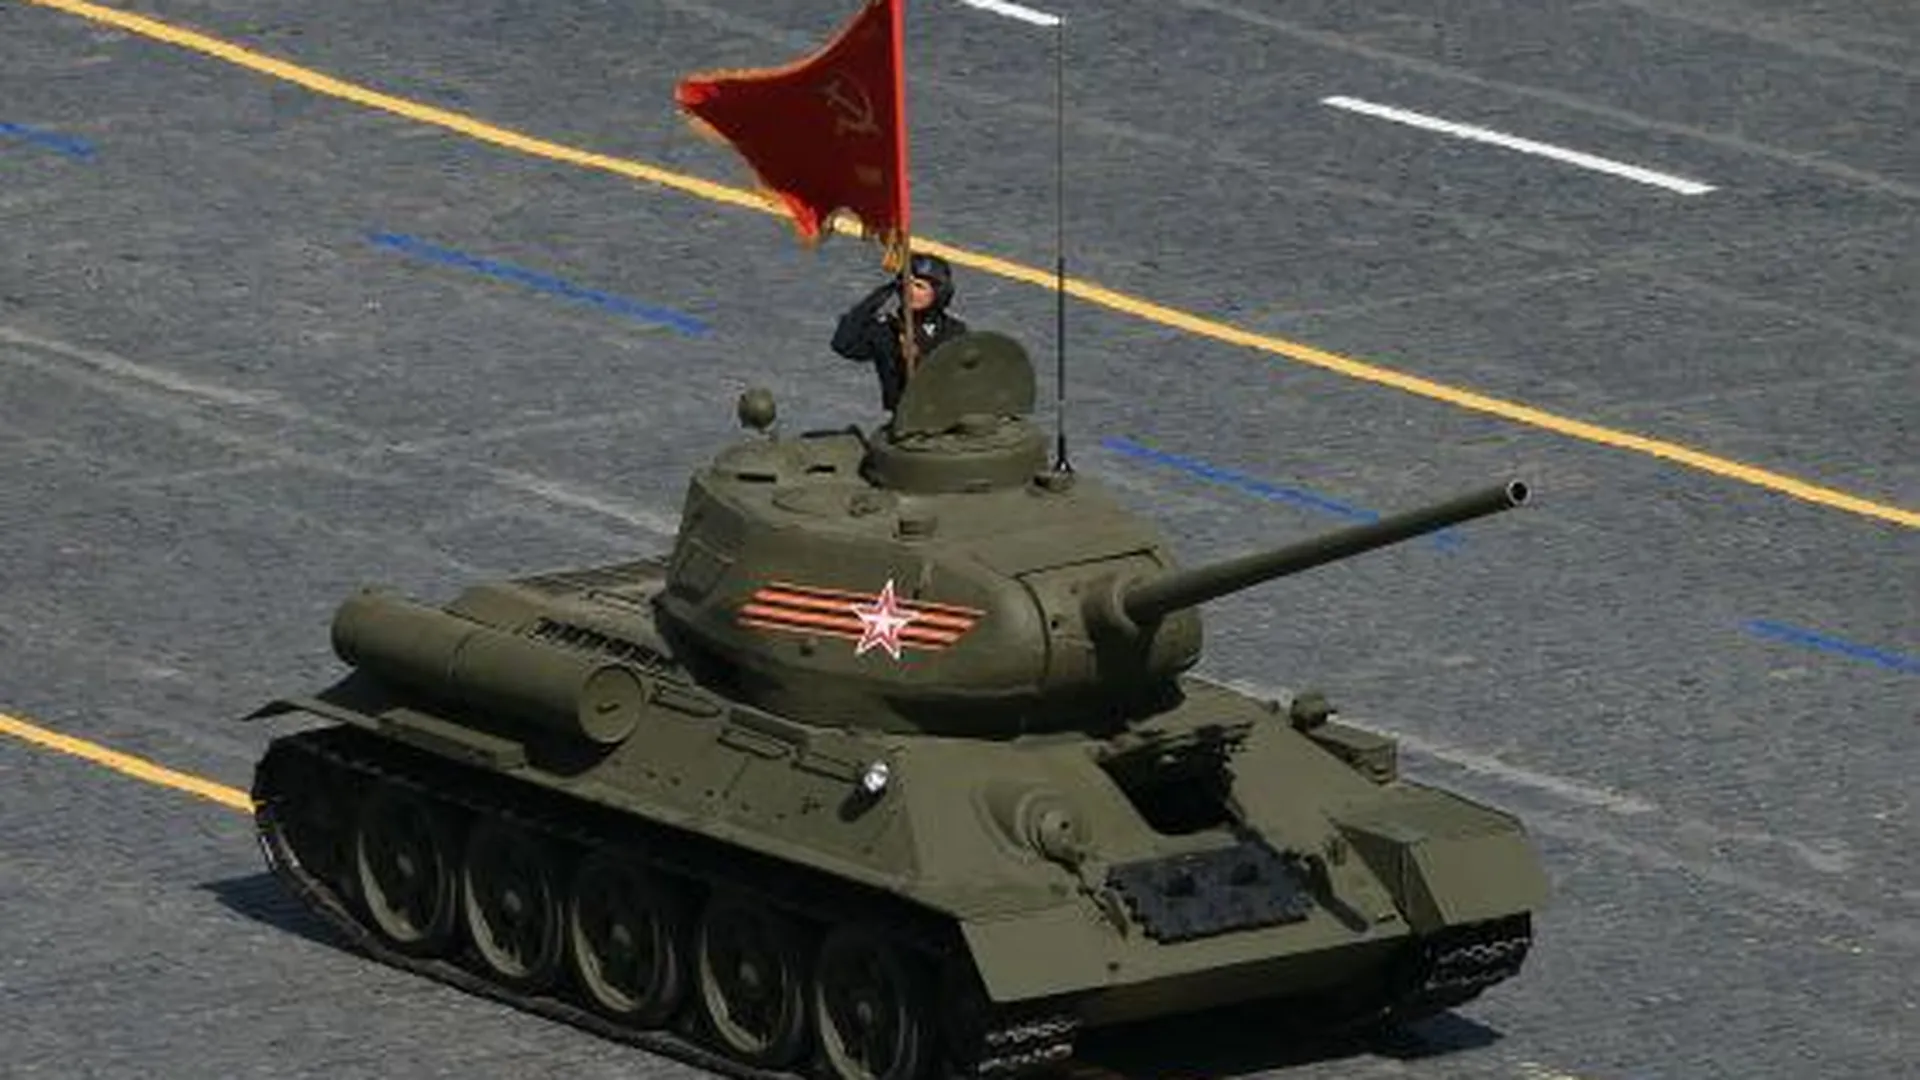 Танк Т-34 доставили в Истринский район для установки в парке